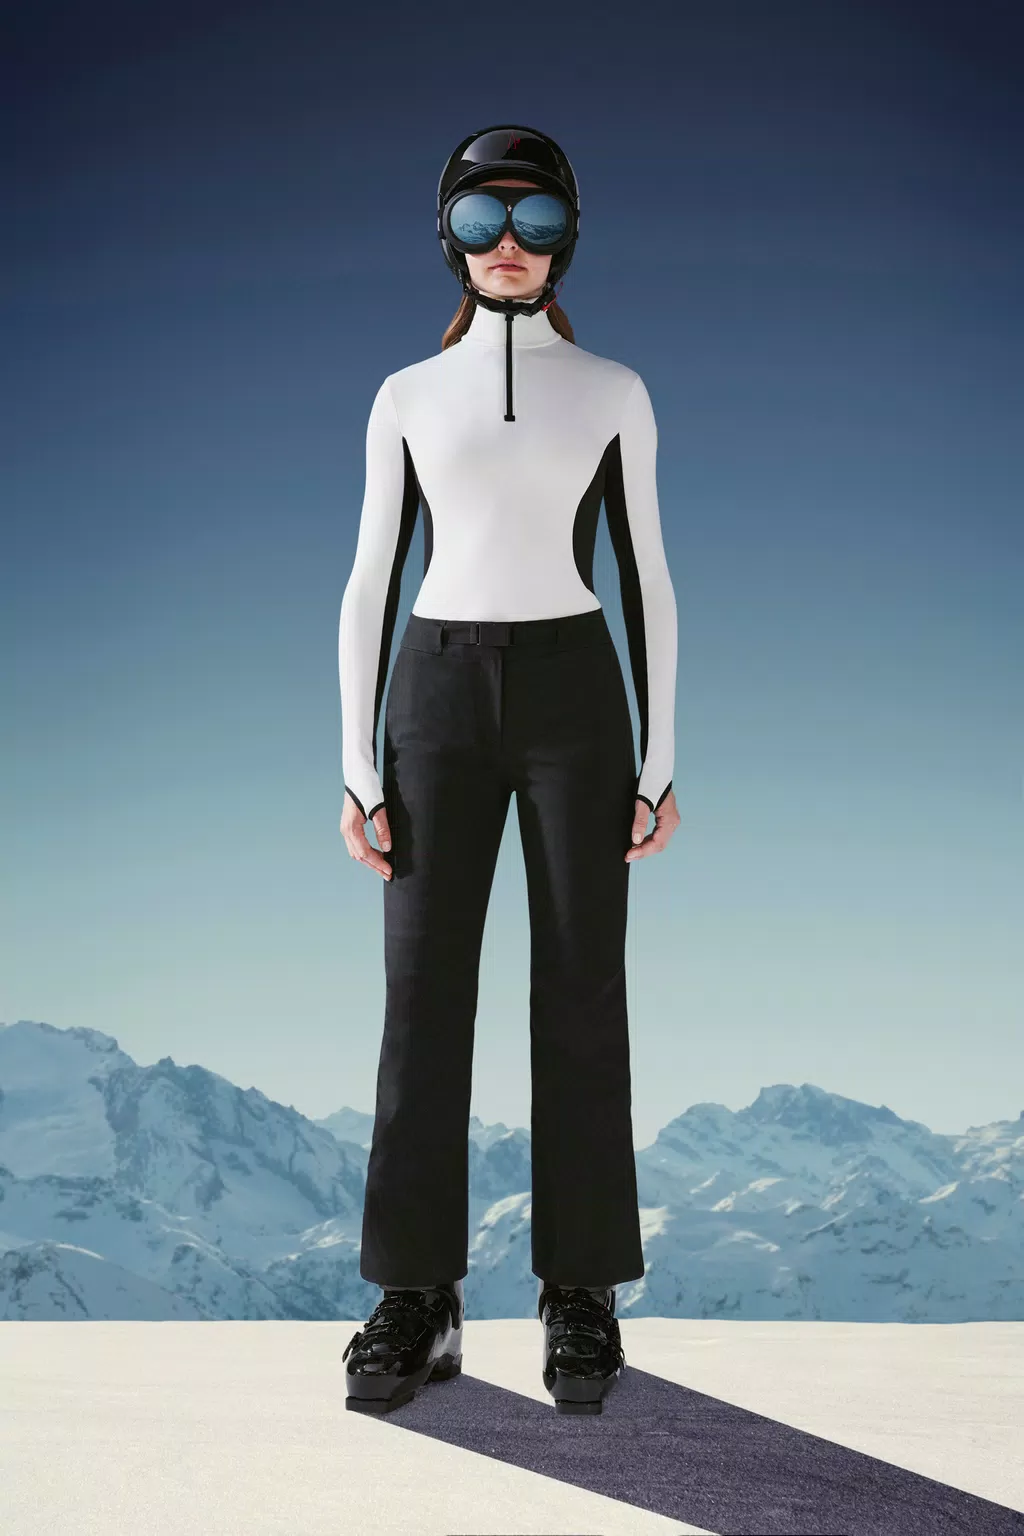 Salopettes  Ski Pant Trousers for Women & Men